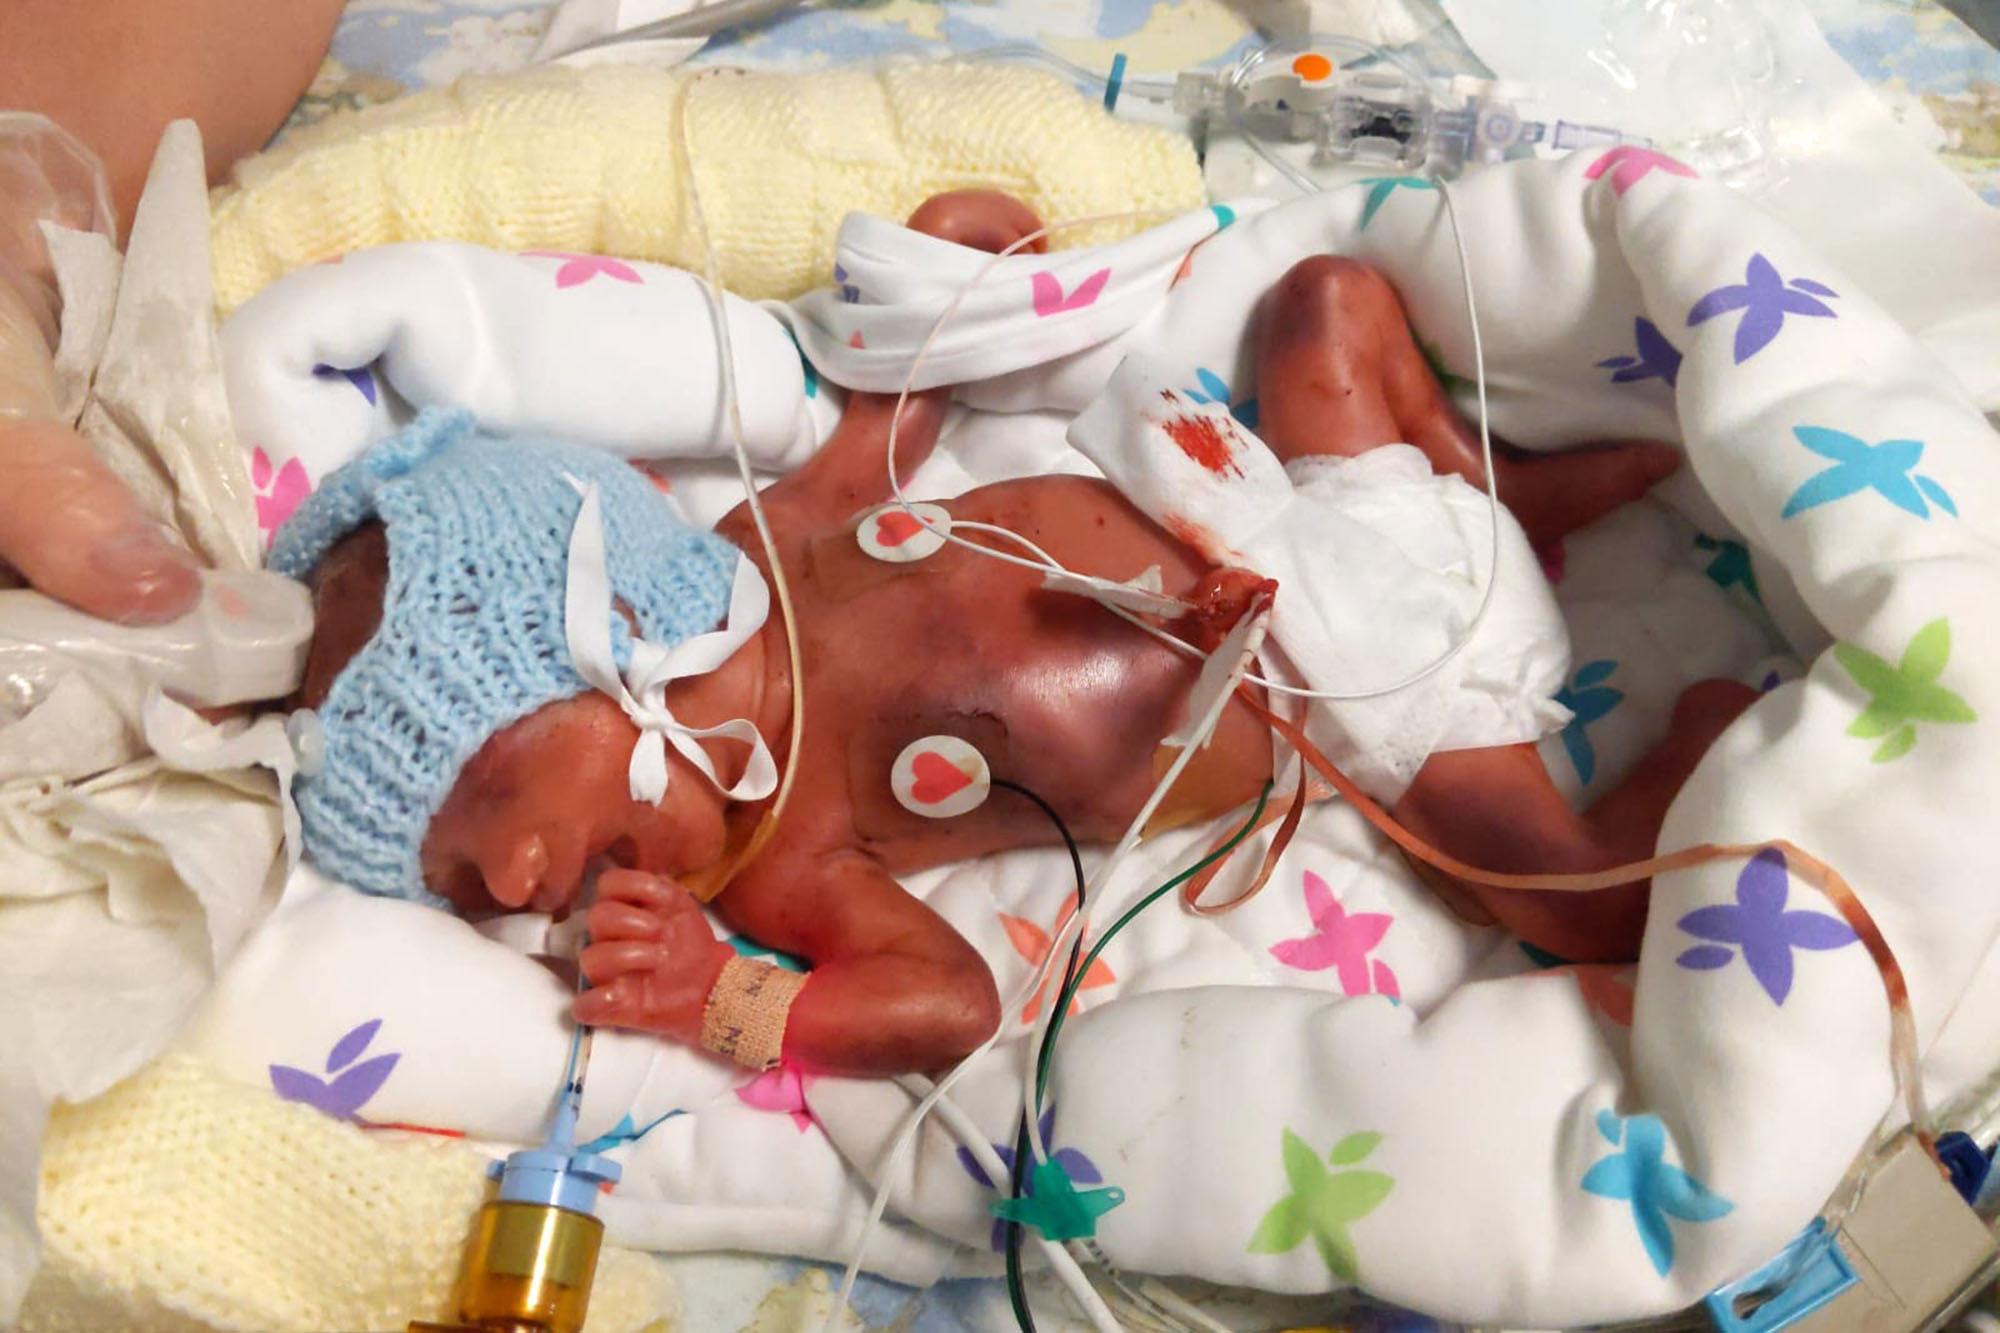 Το ευχάριστο νέο της ημέρας: Μωράκι θα κάνει για πρώτη φορά γιορτές σπίτι  μετά από 2 χρόνια σε νοσοκομείο